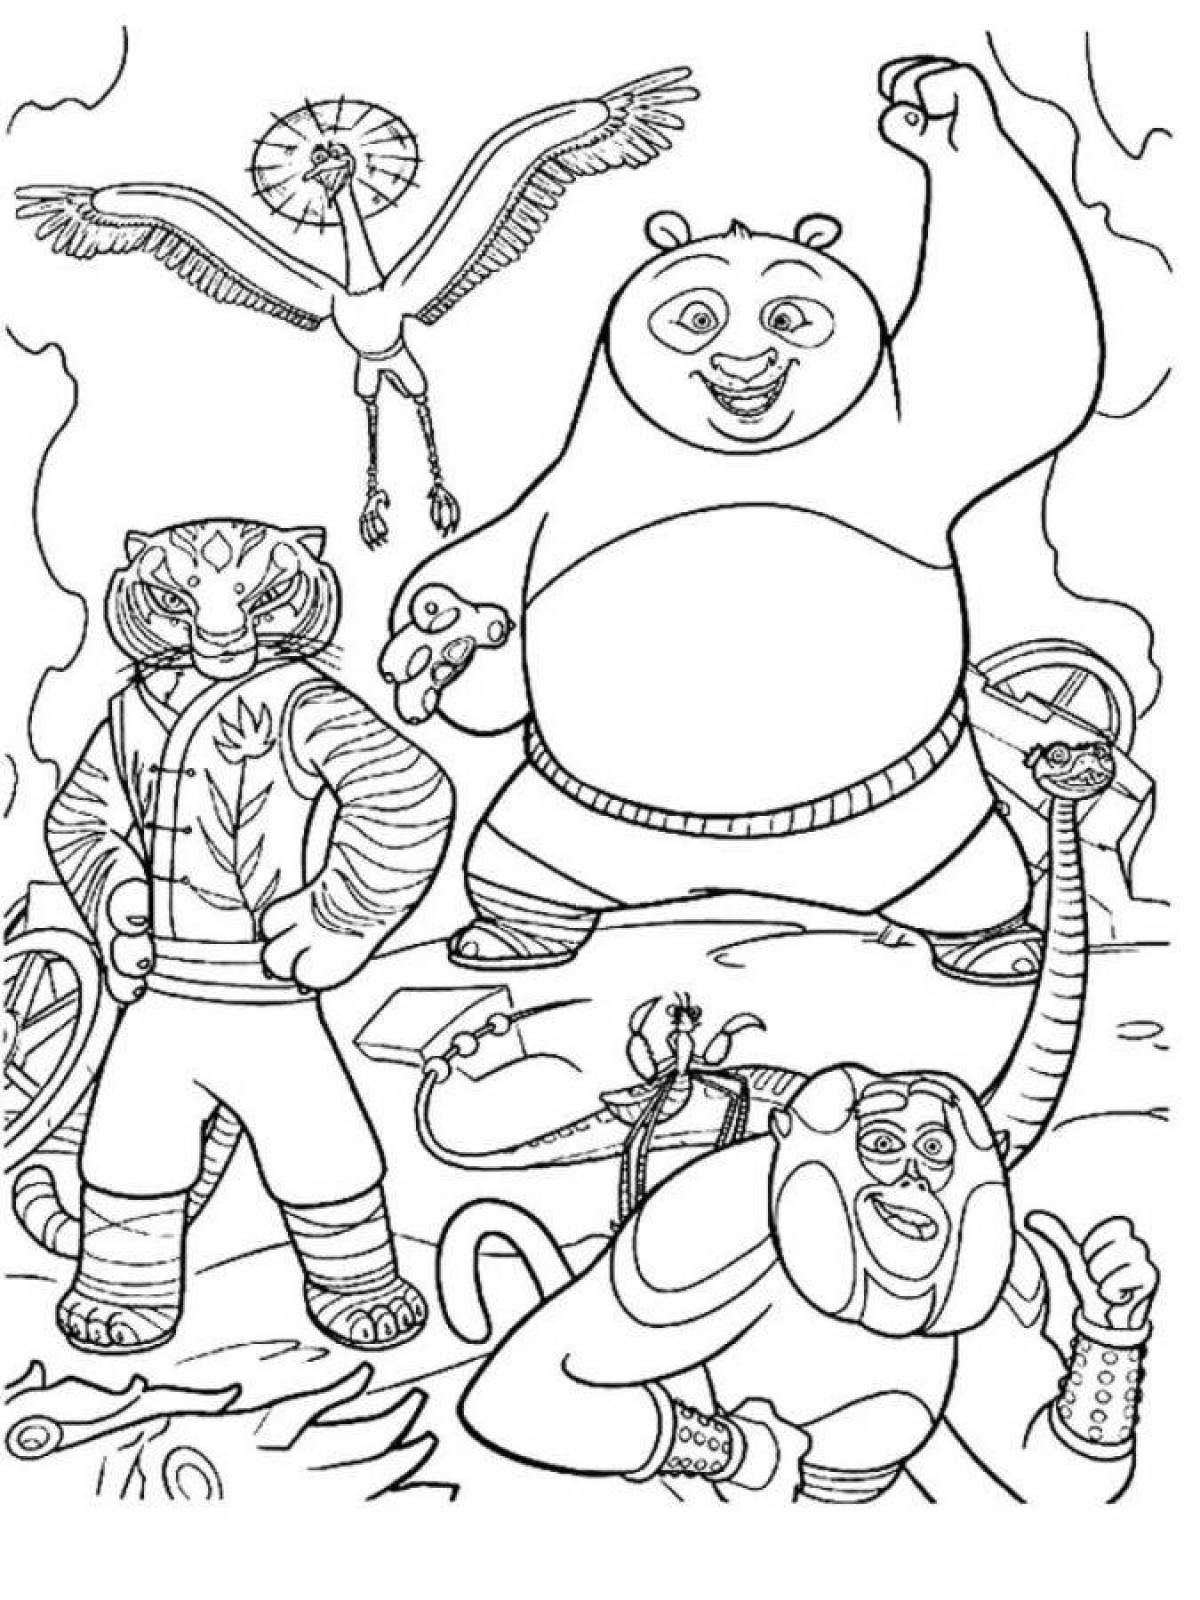 Kung fu panda #19